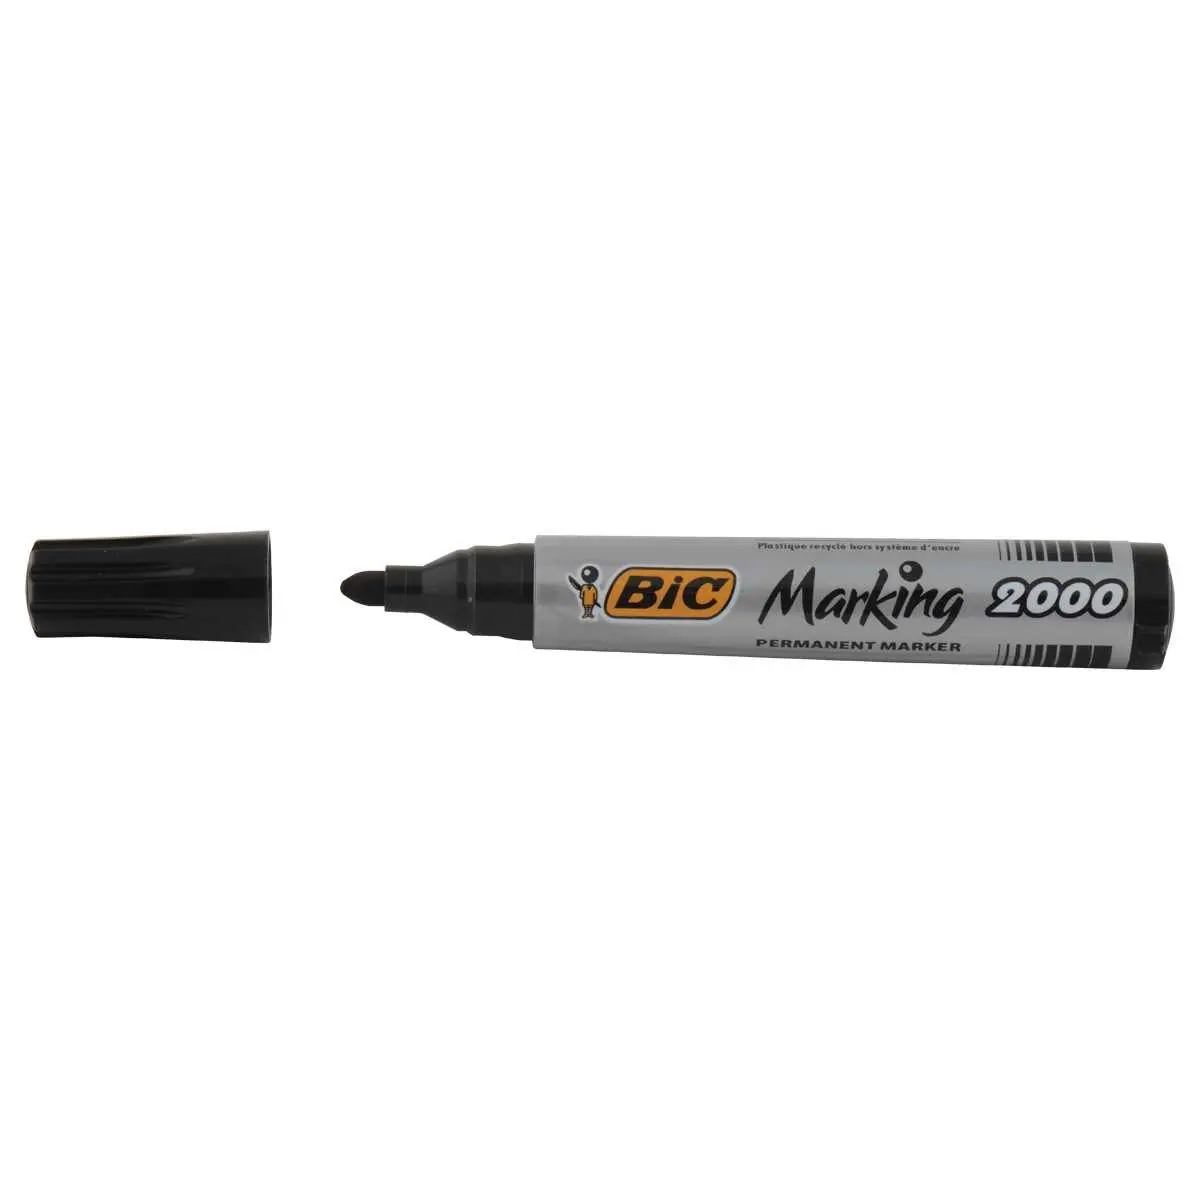 Marqueur permanent noir pointe biseautée E500 2 à 7mm - RETIF